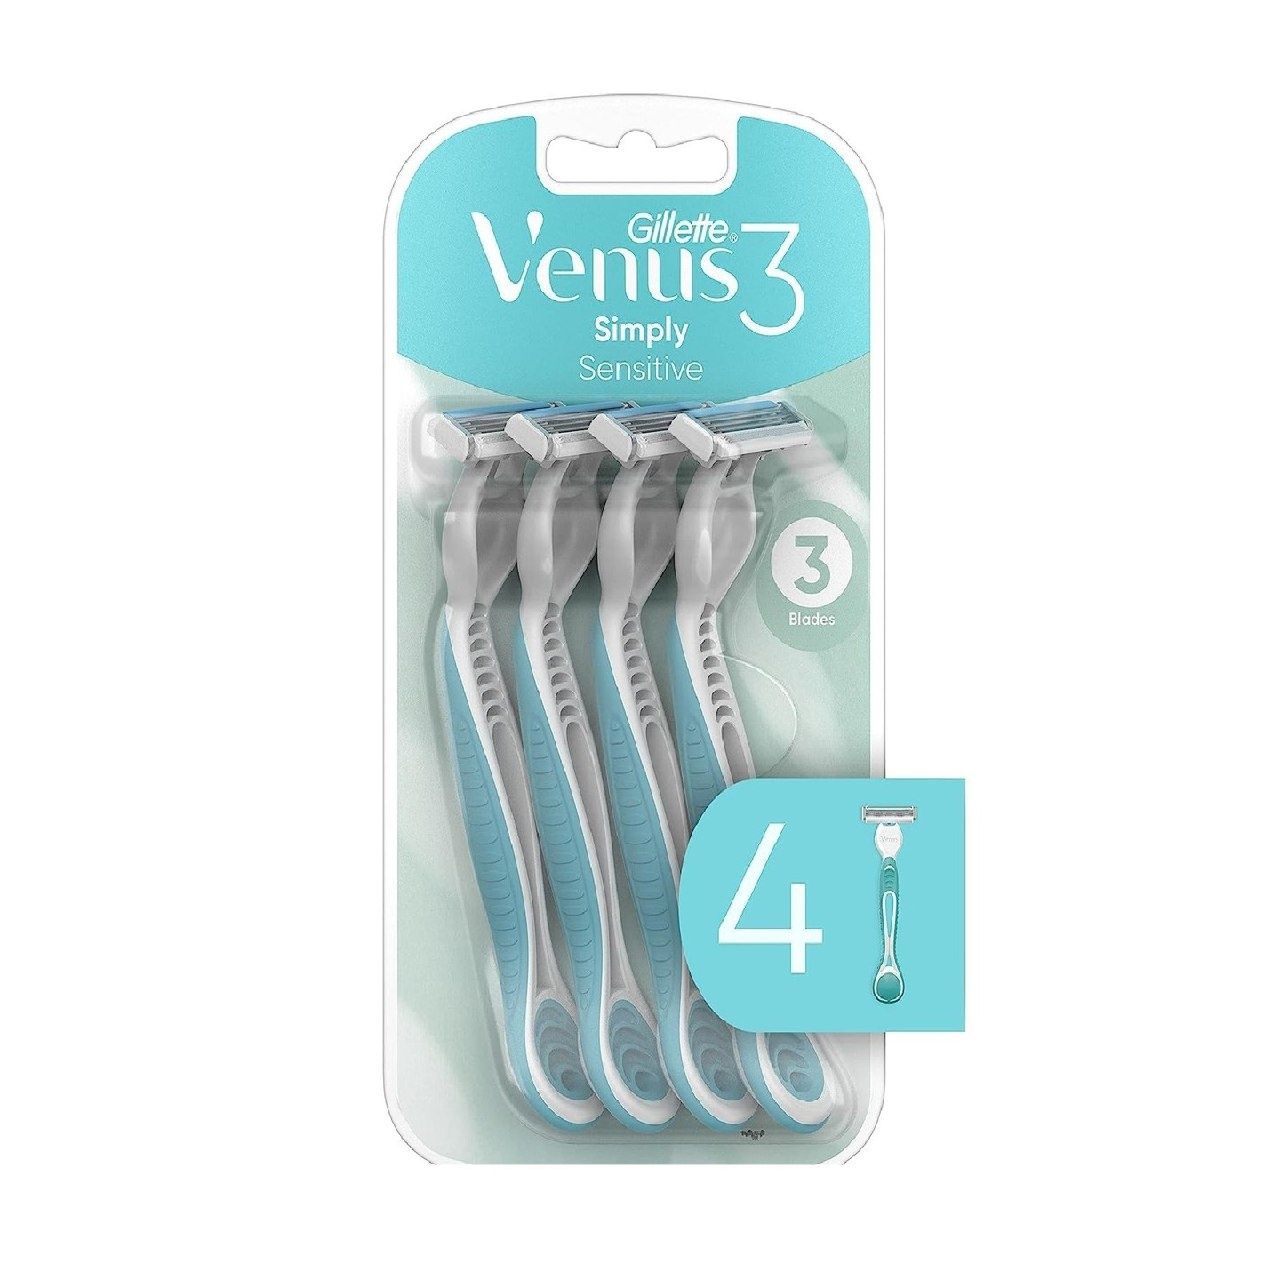 Женские одноразовые бритвы Gillette Venus Simply 3 Sensitive, в упаков